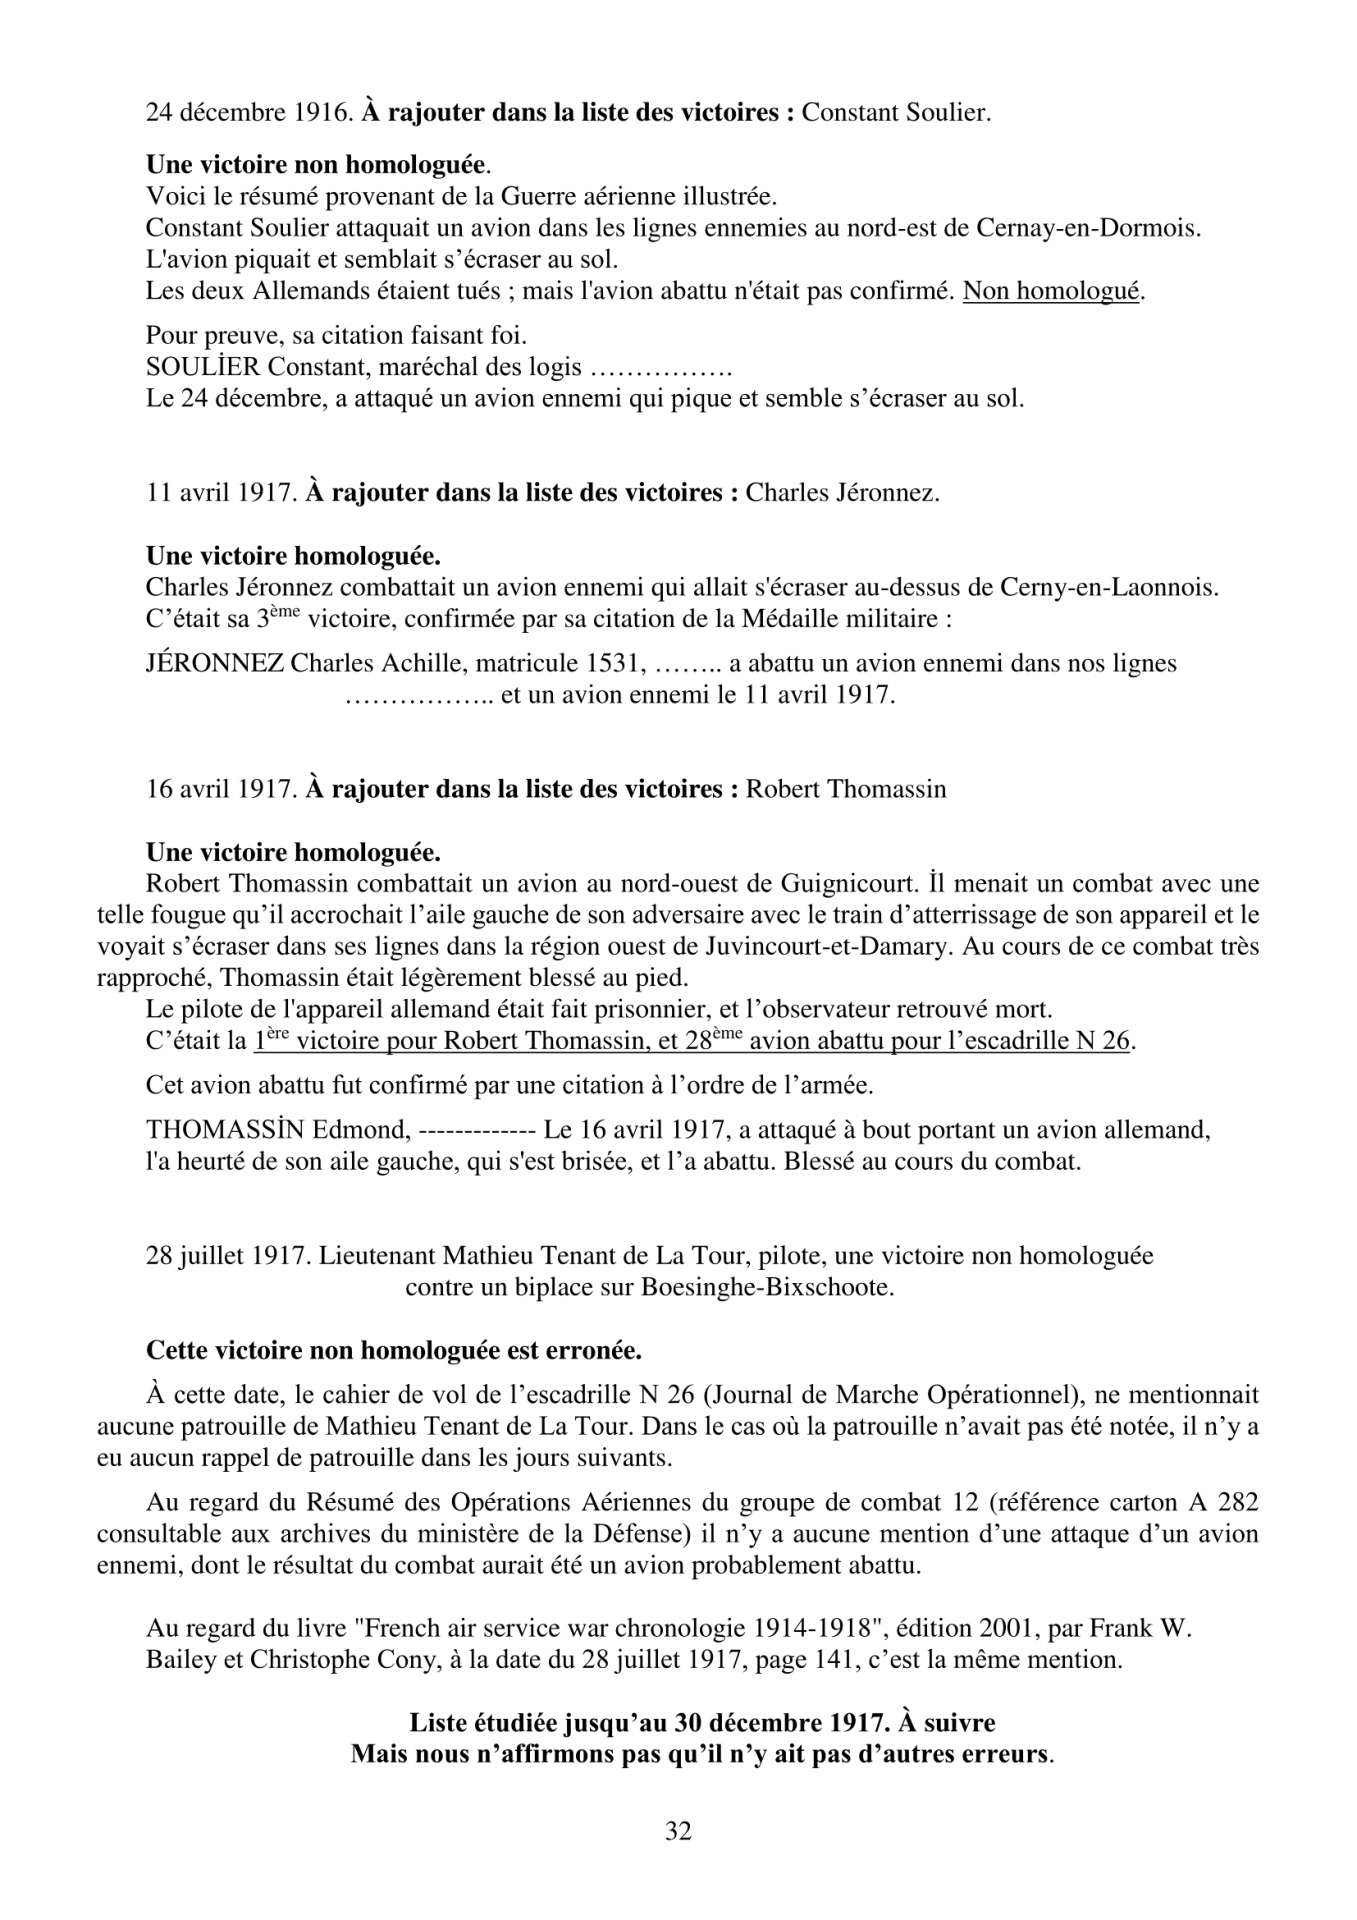 Les erreurs 80 des avions homologues du gc 12 par albin denis avec ses 80 pages 32